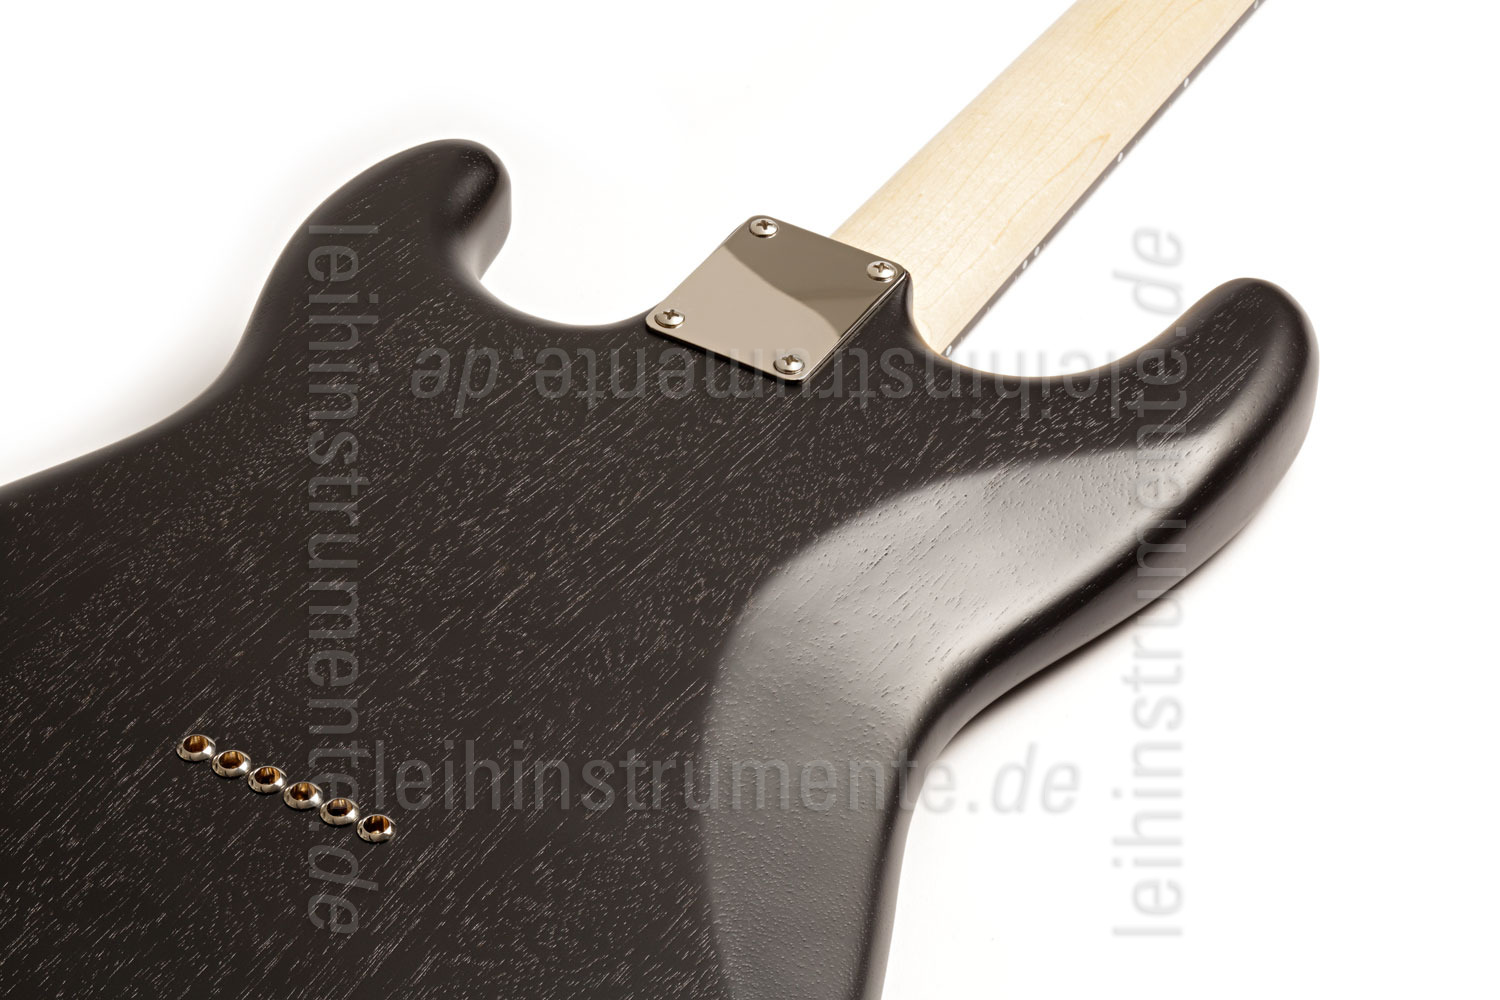 zur Artikelbeschreibung / Preis E-Gitarre BERSTECHER Deluxe - Black / Floral Black + Koffer - made in Germany